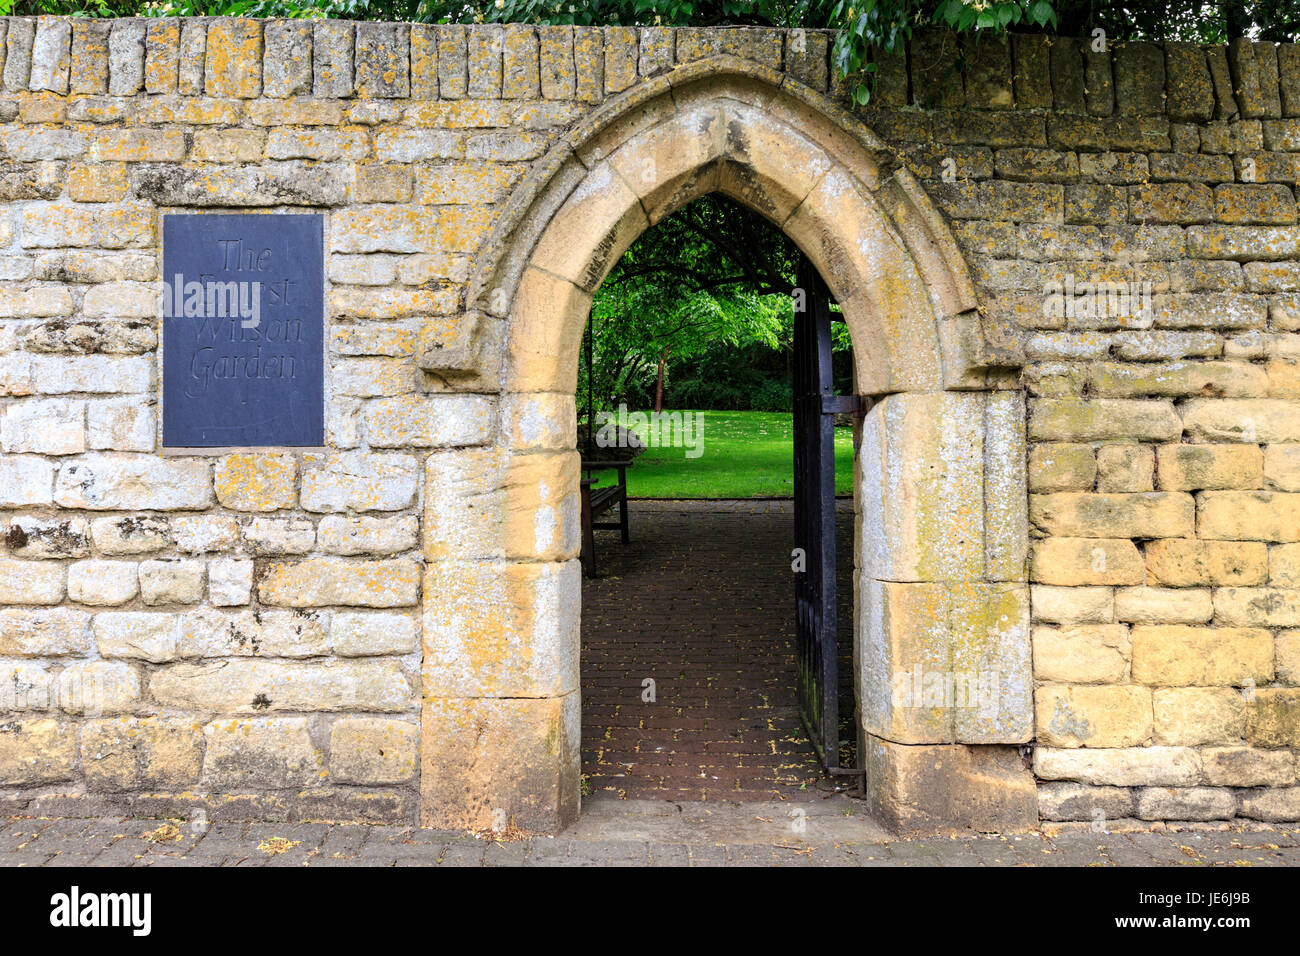 La entrada de la pared de piedra de Cotswold al jardín conmemorativo de Ernest Wilson, Chipping Campden, Inglaterra Foto de stock